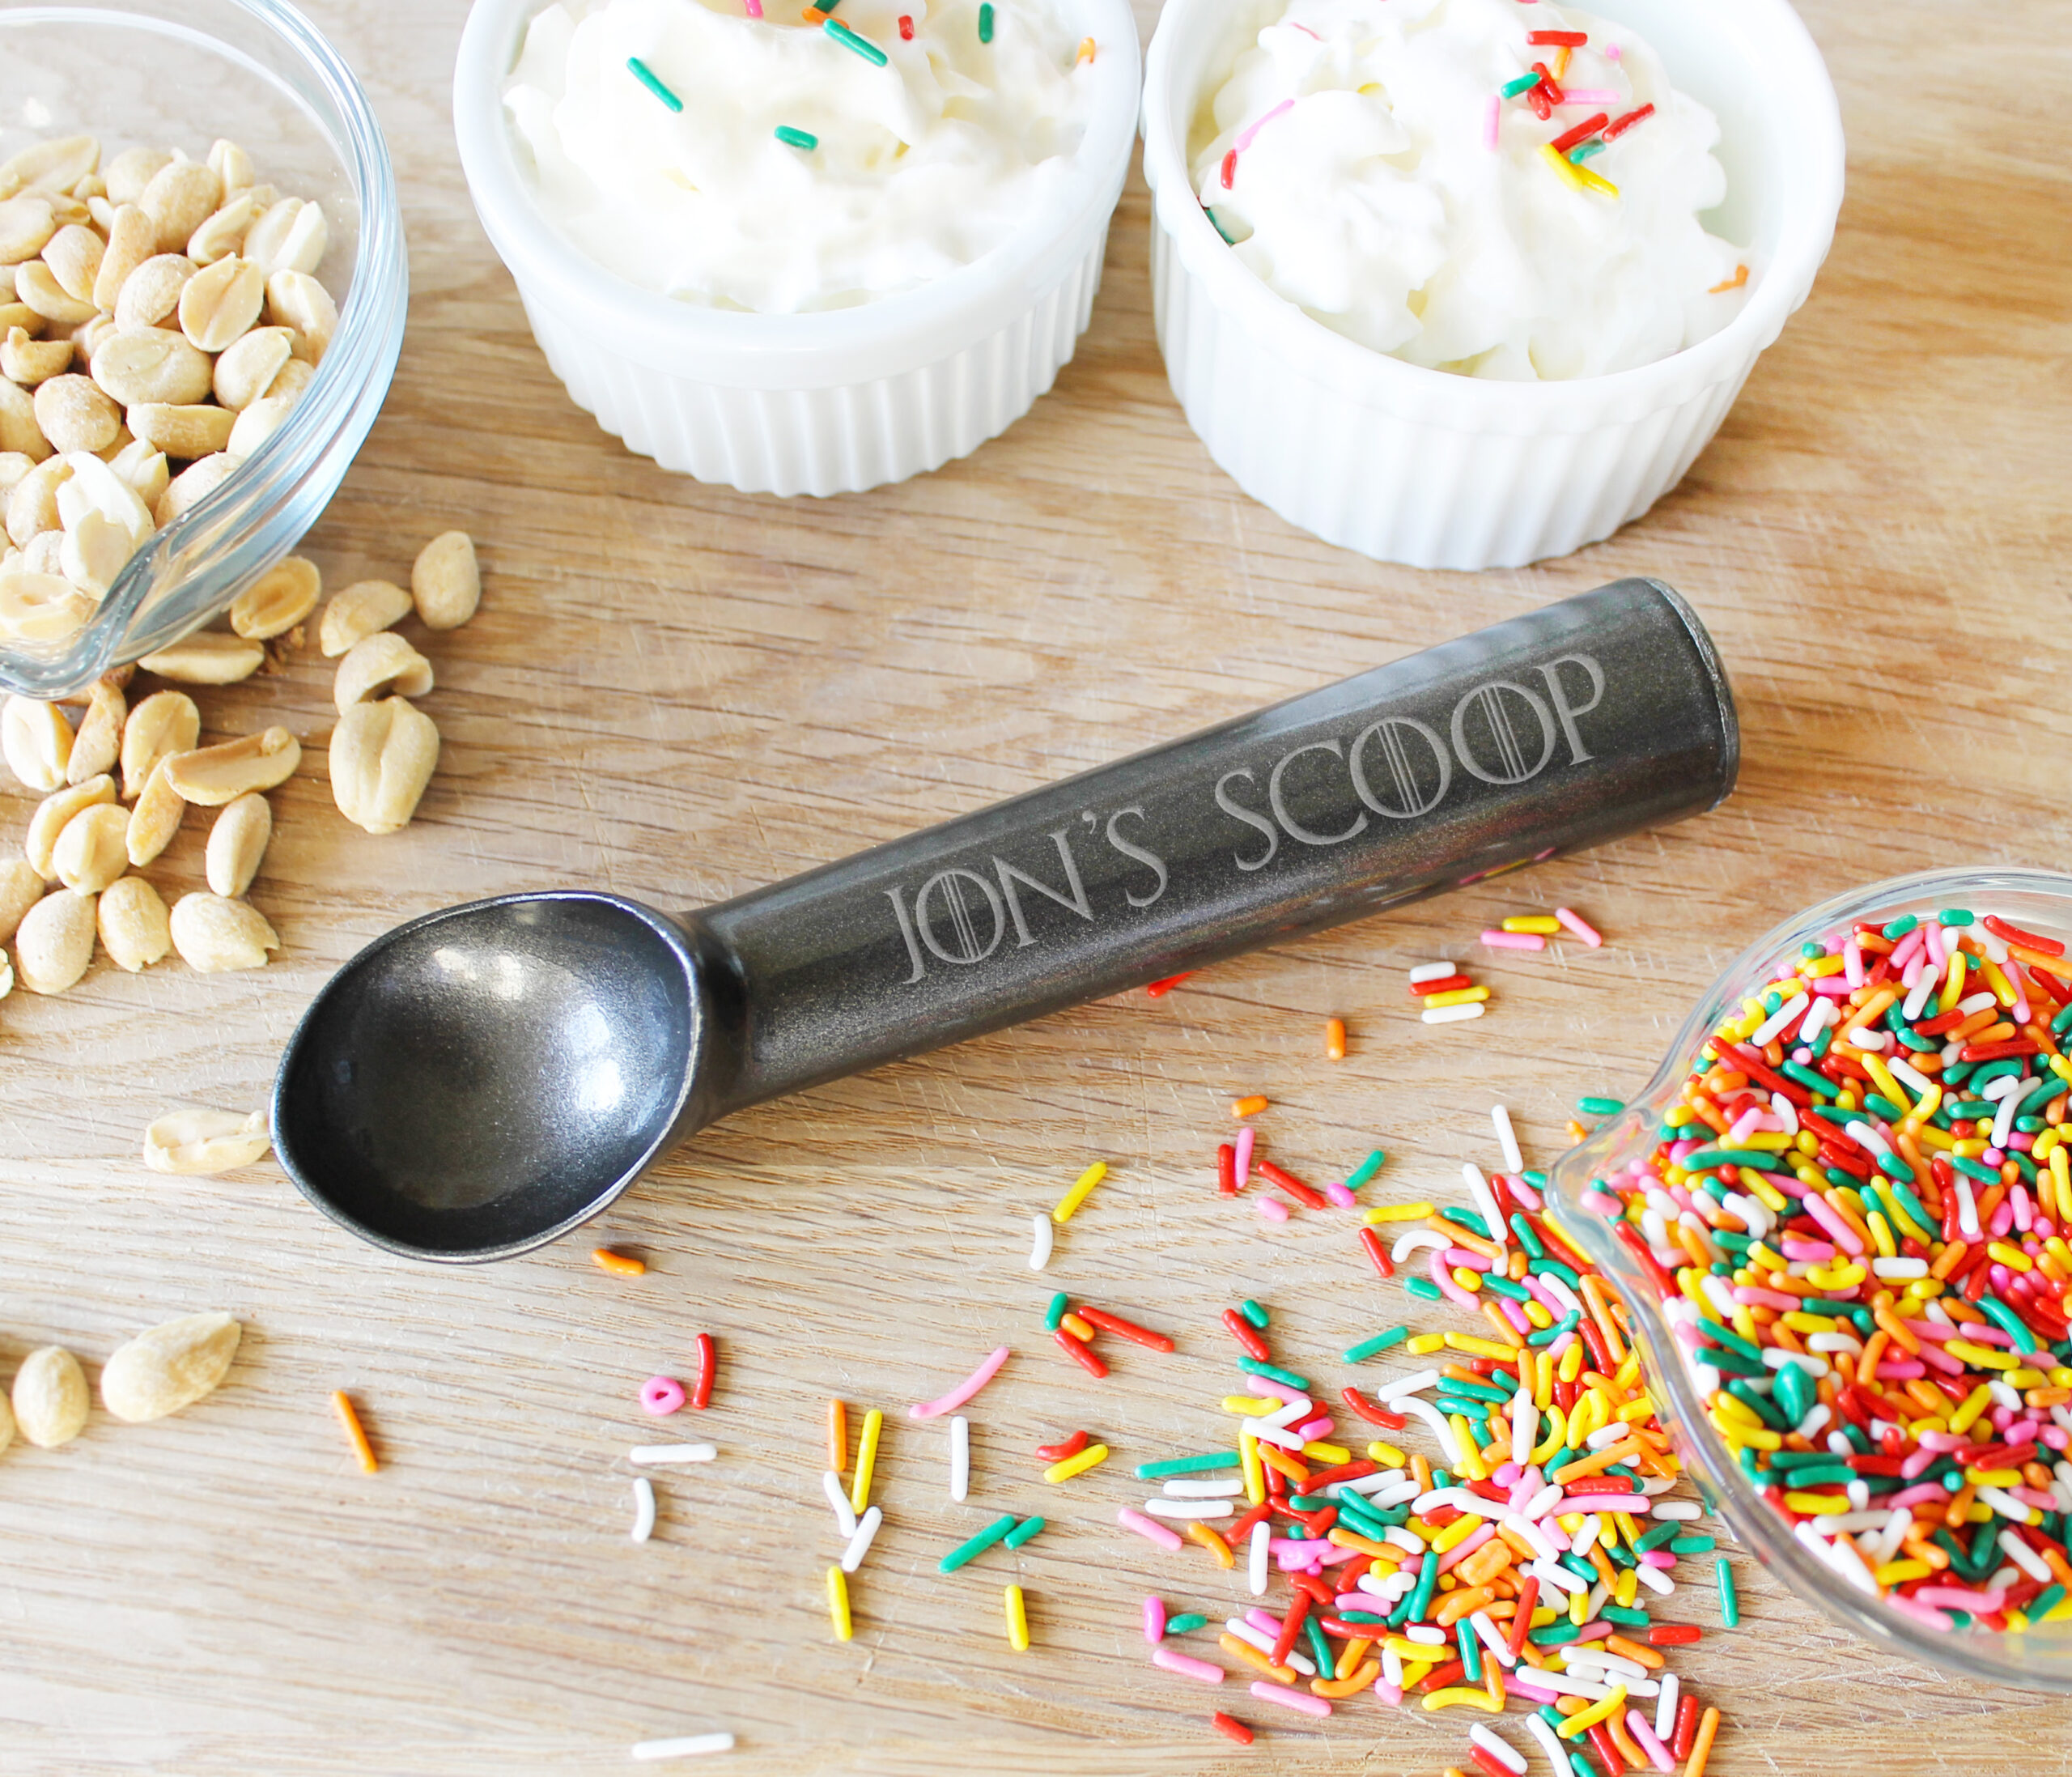 The Cone Ice Cream Scoop